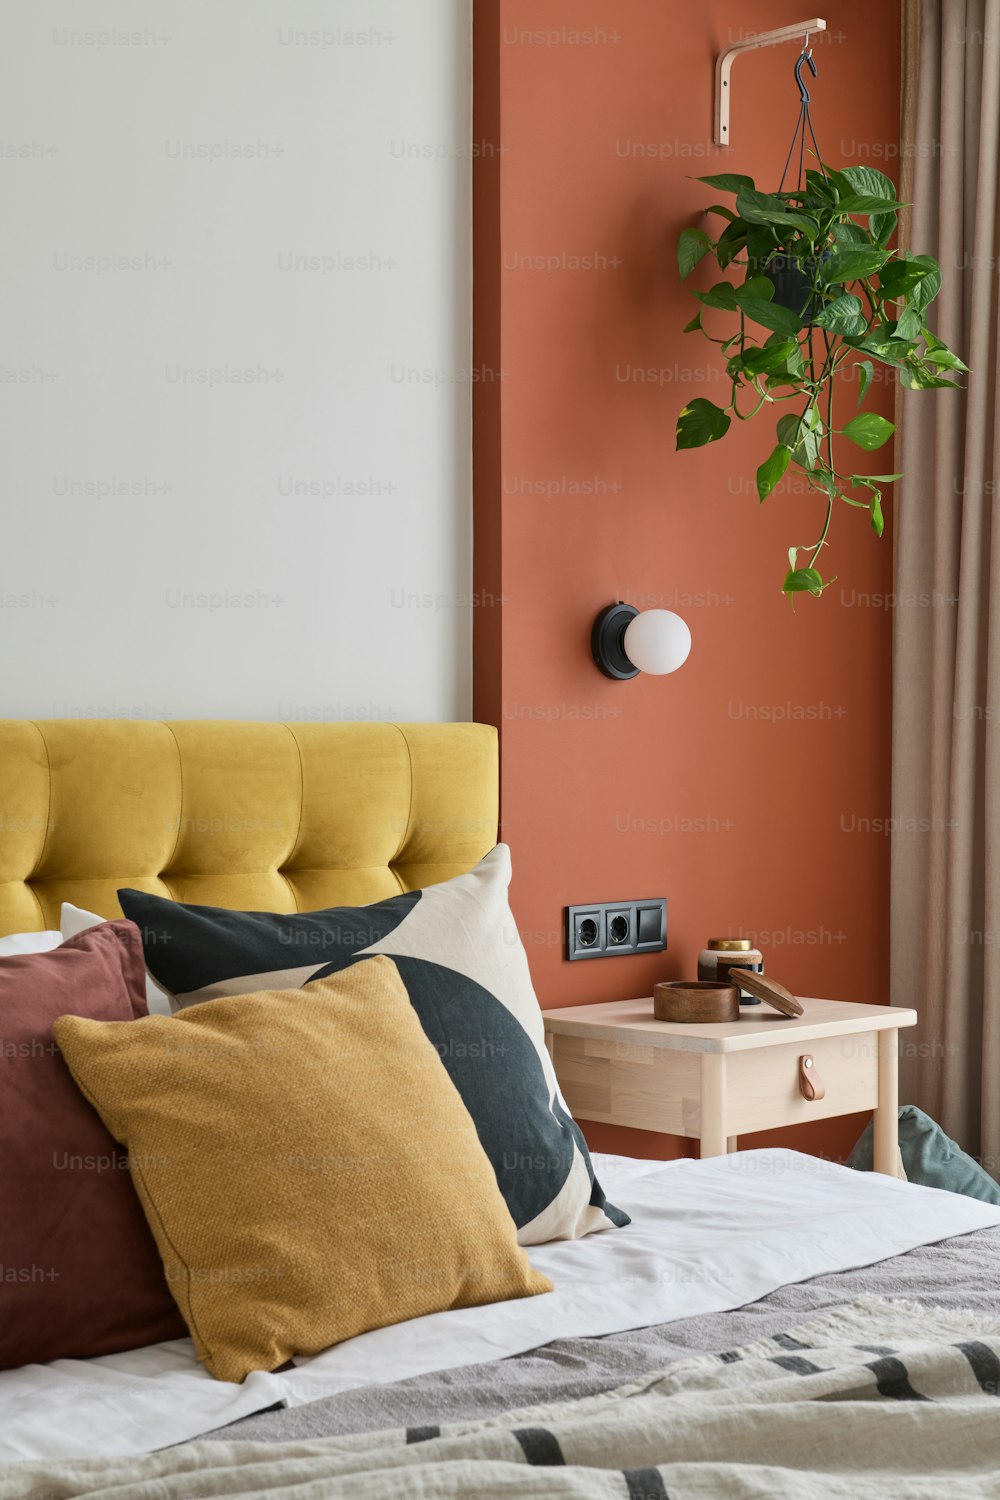 黄色とオレンジ色の枕と壁に植物がある�ベッド